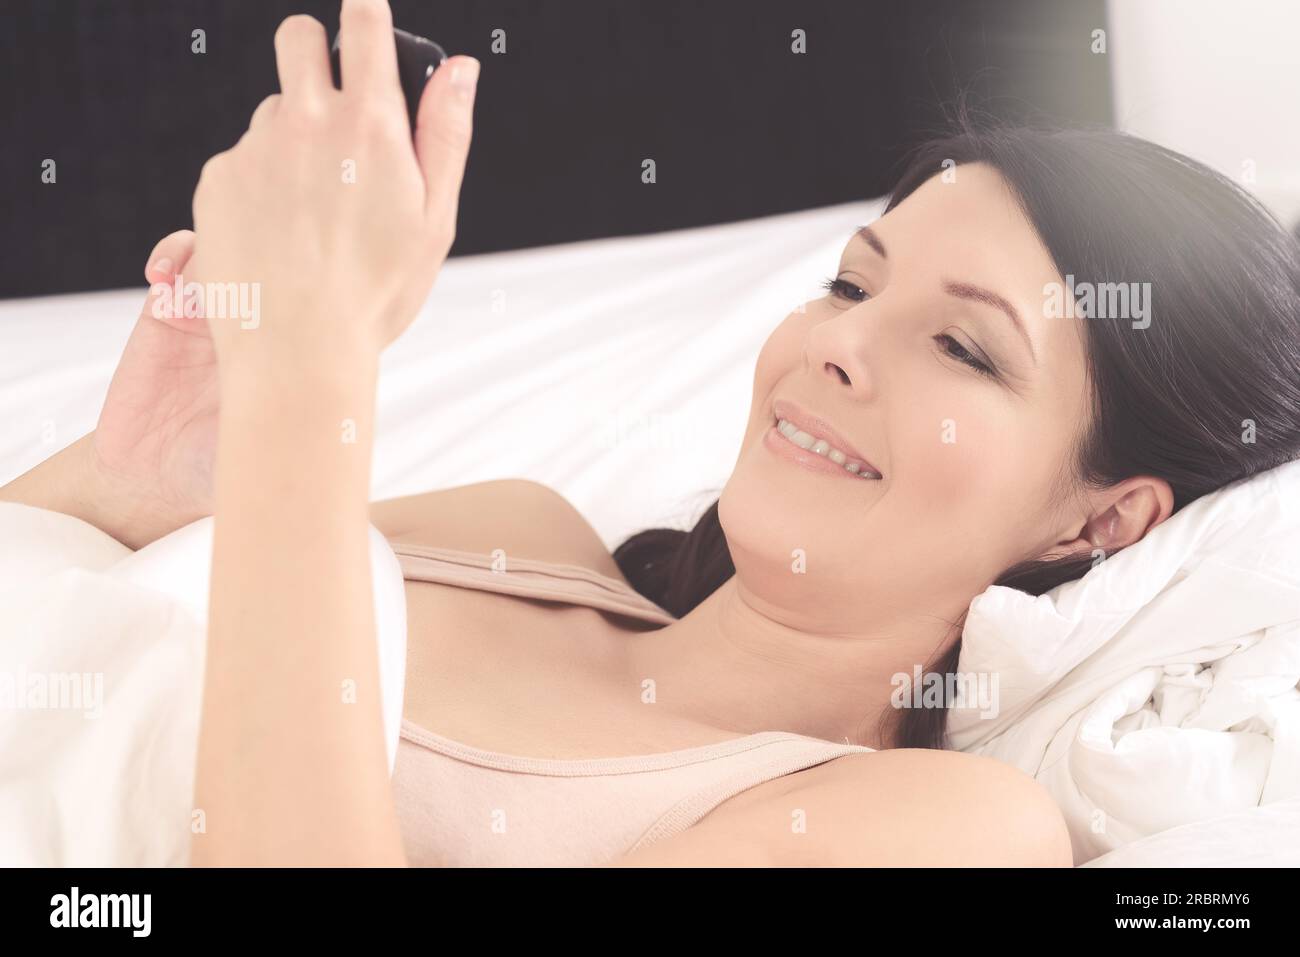 Attraktive junge Frau liegt im Bett und las auf Sms auf ihrem Mobiltelefon lächelnd mit Freude über die Nachricht, Closeup-Seitenansicht Stockfoto